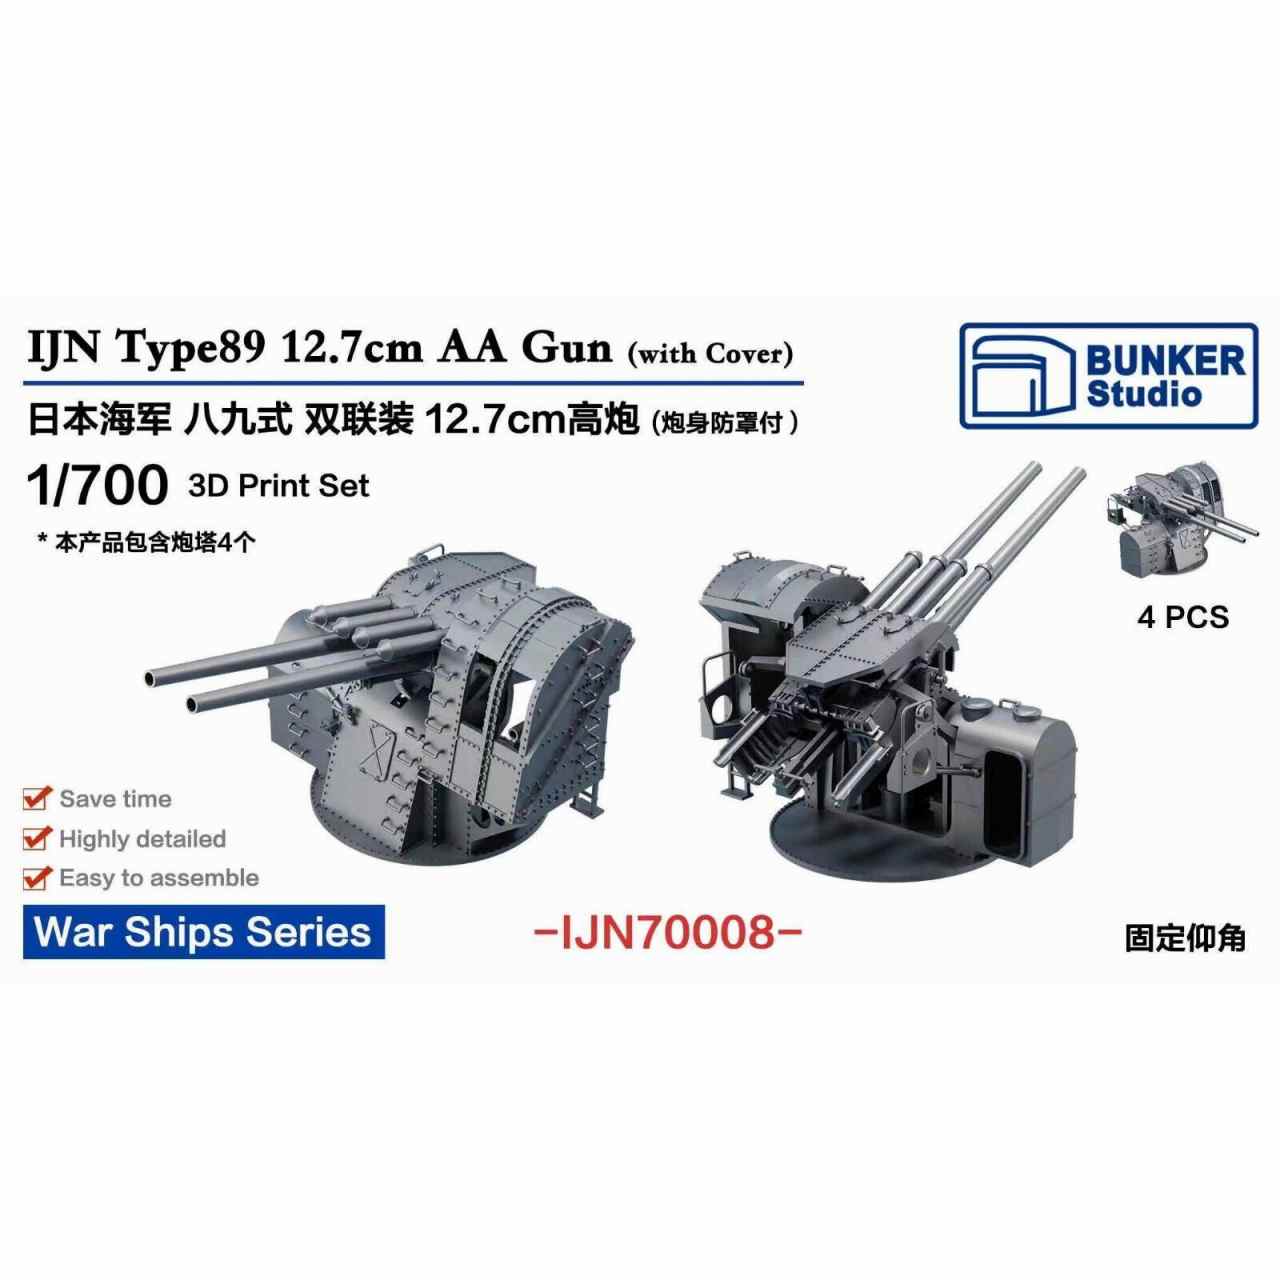 【新製品】IJN70008 日本海軍 八九式12.7cm連装高角砲w/砲身基部保護防盾